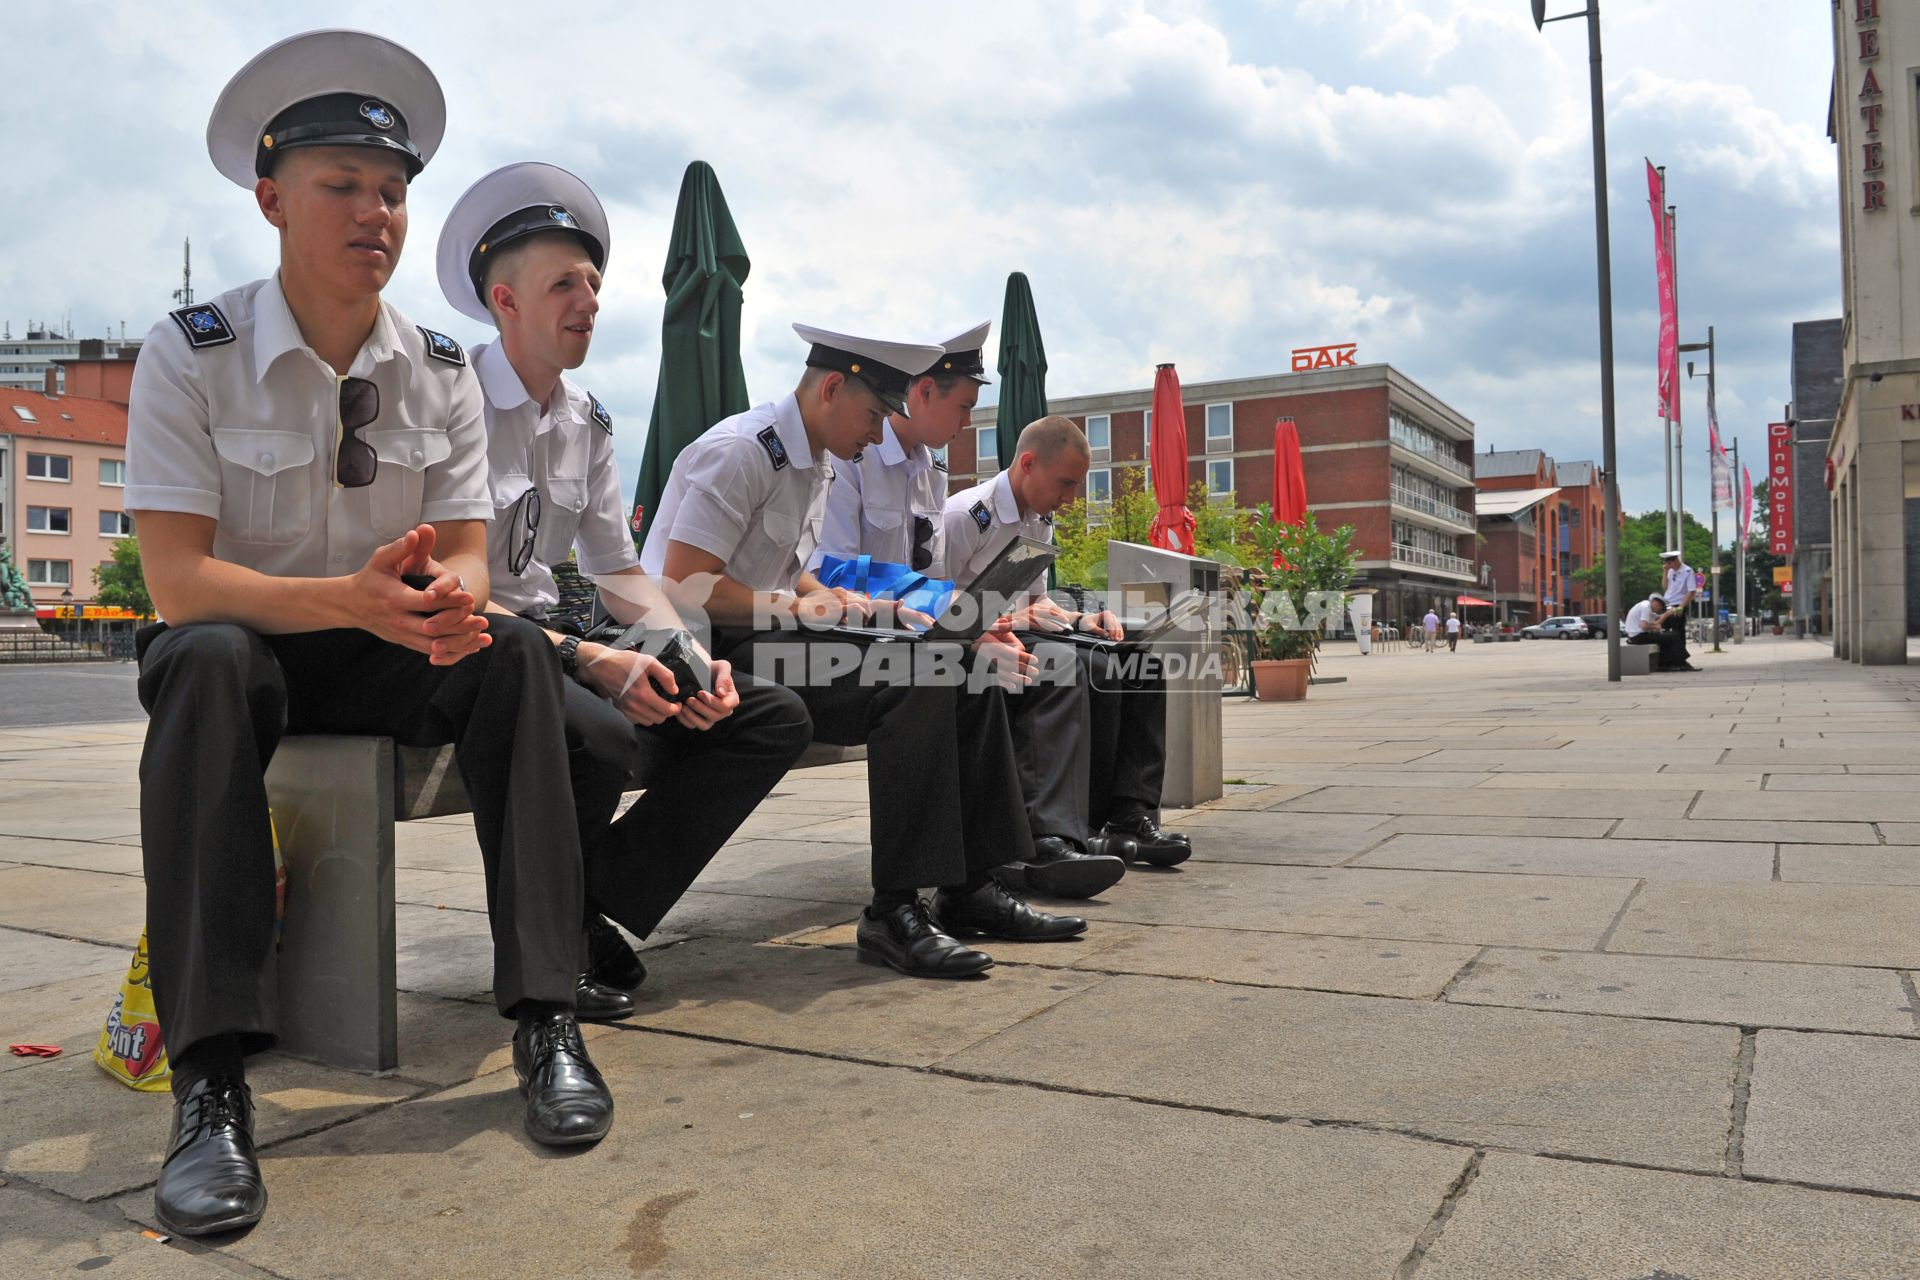 Порт города Бремерхафена. На снимке: российские курсанты сидят на пристане.